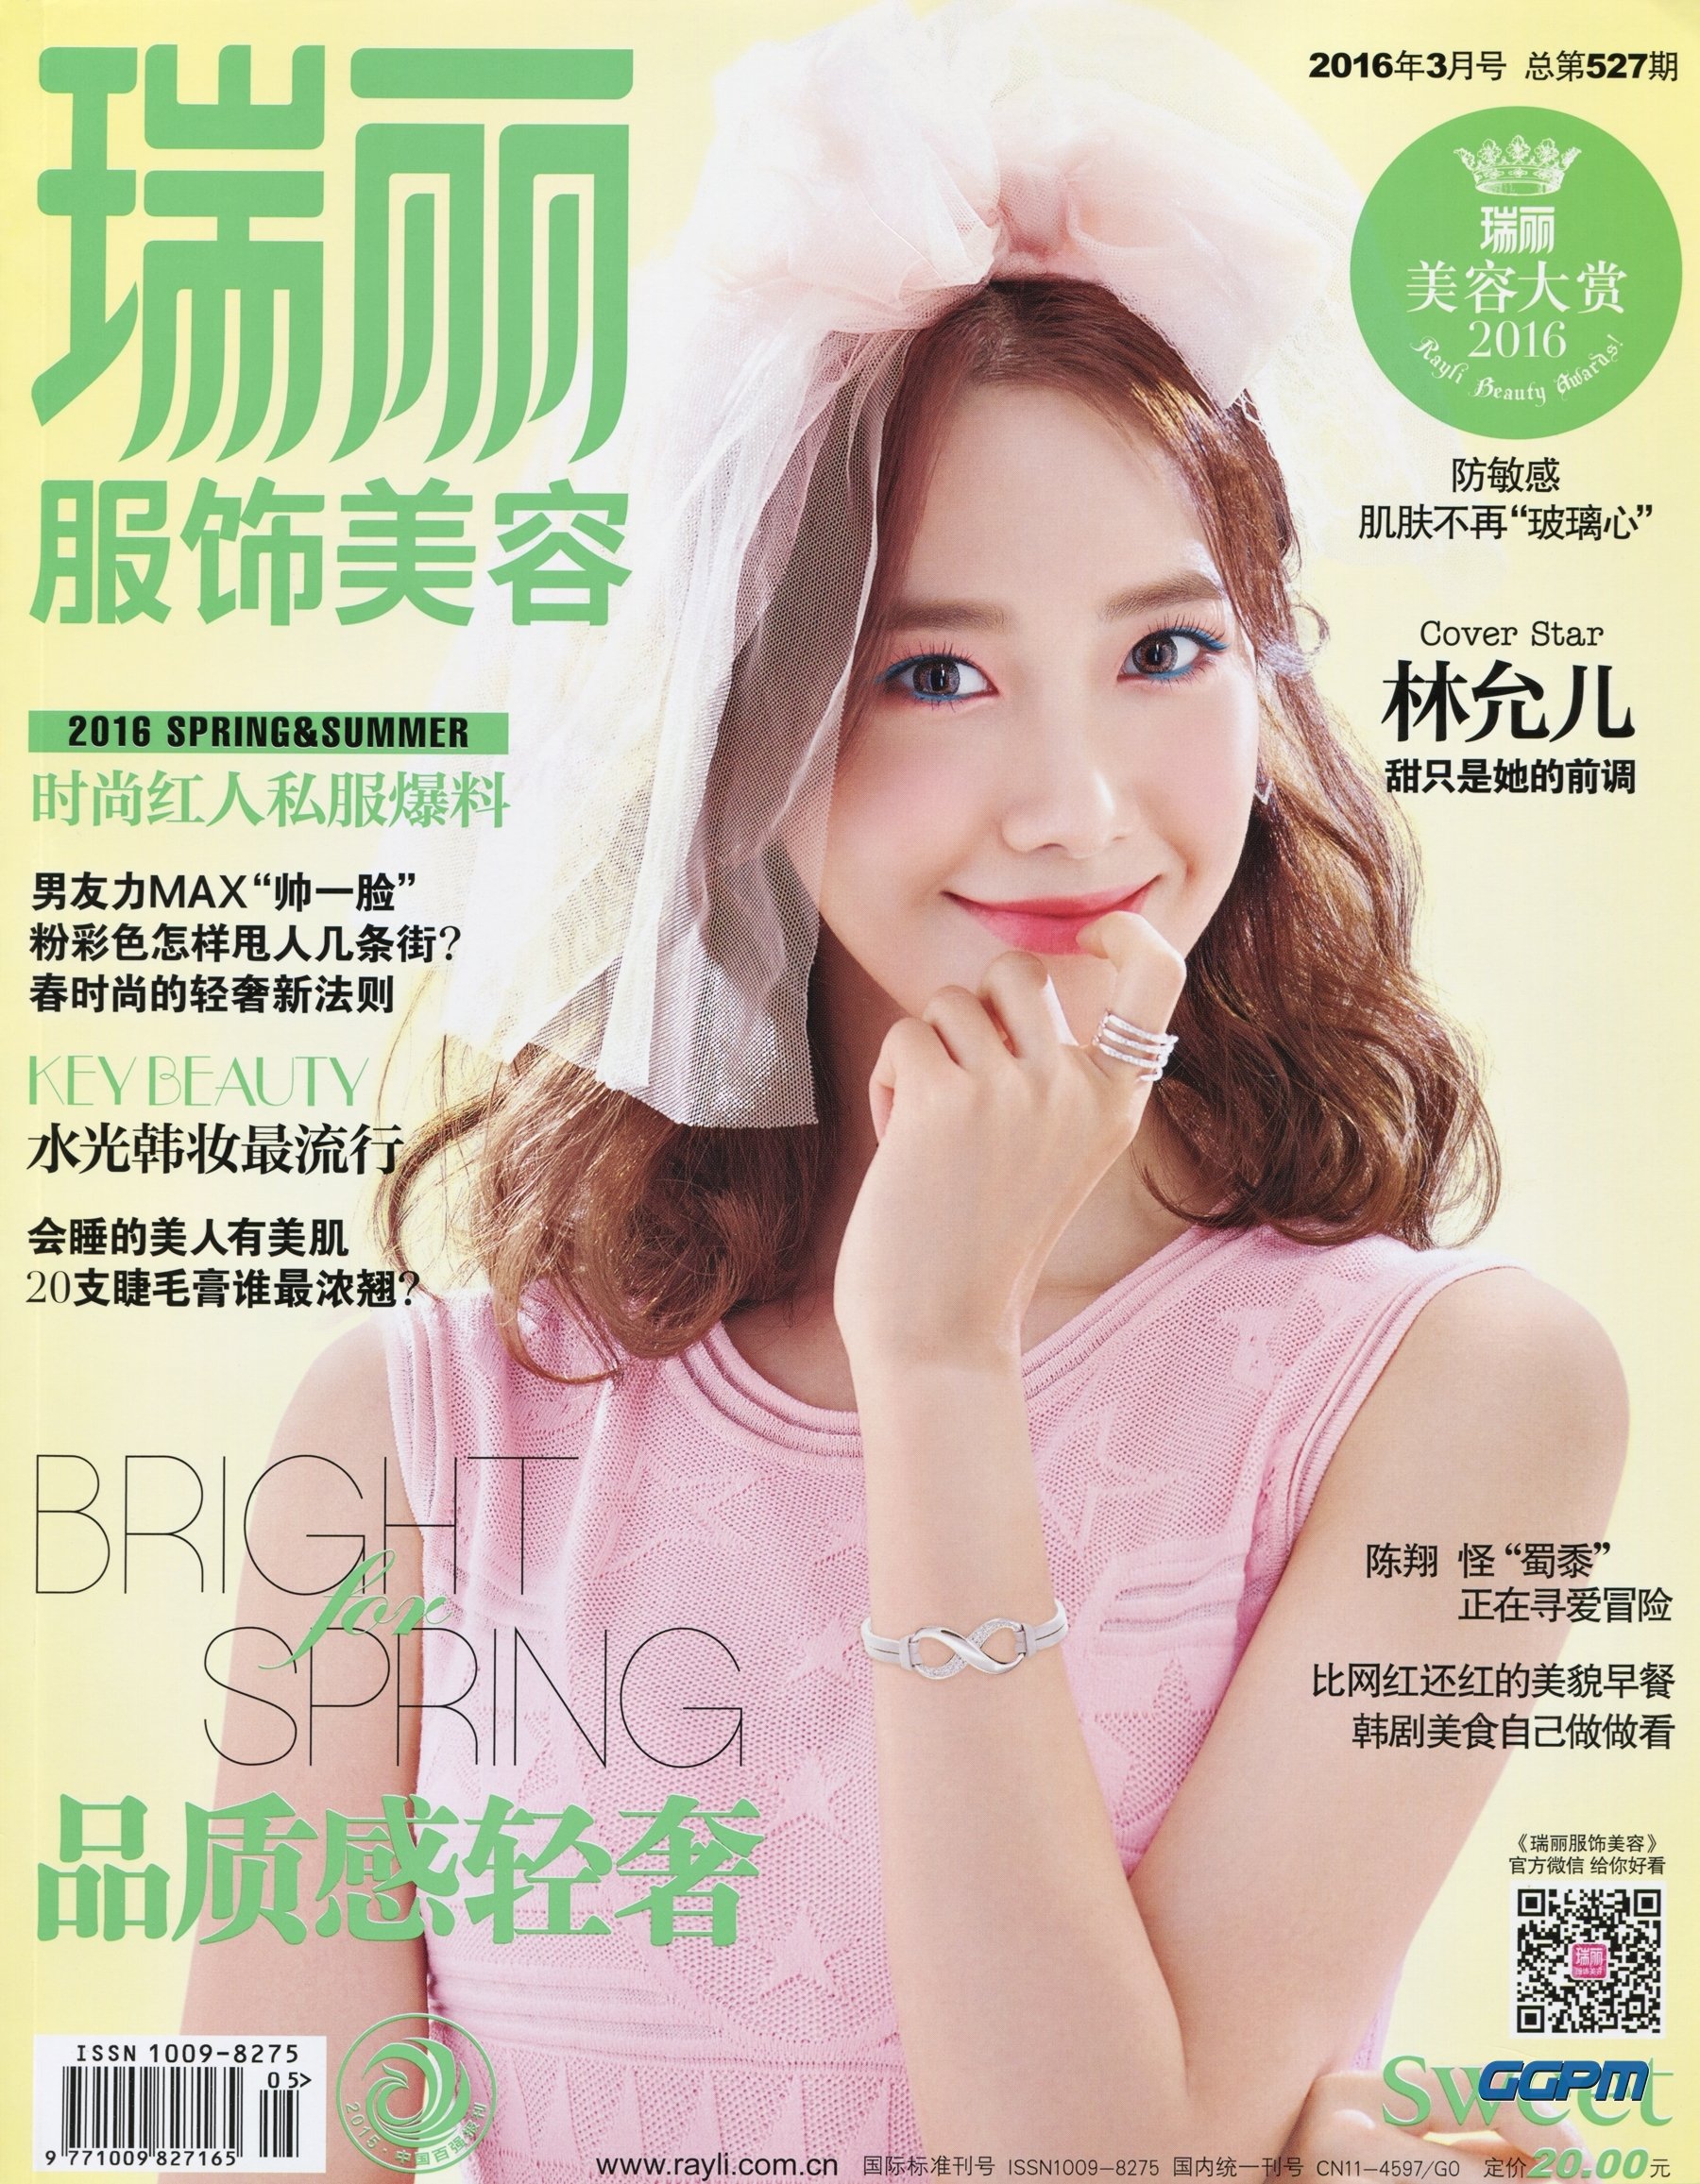 [PIC][17-02-2016]YoonA xuất hiện trên trang bìa ấn phẩm tháng 3 của tạp chí Trung Quốc - "Ray Li" MBmOmwiRex-3000x3000